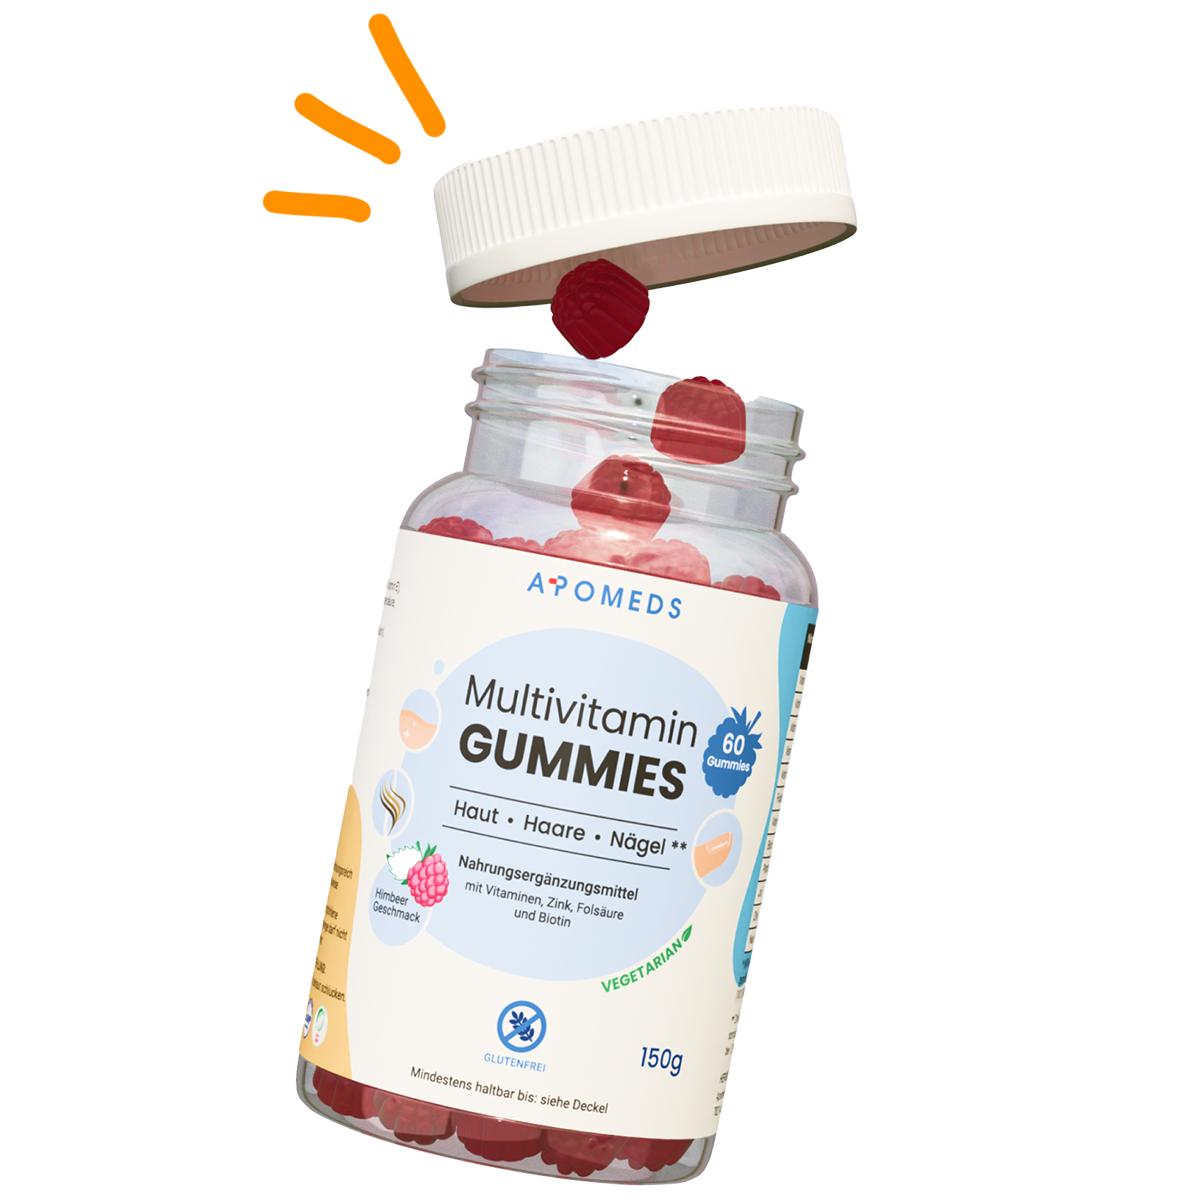 Multivitamin Gummis Vitamine